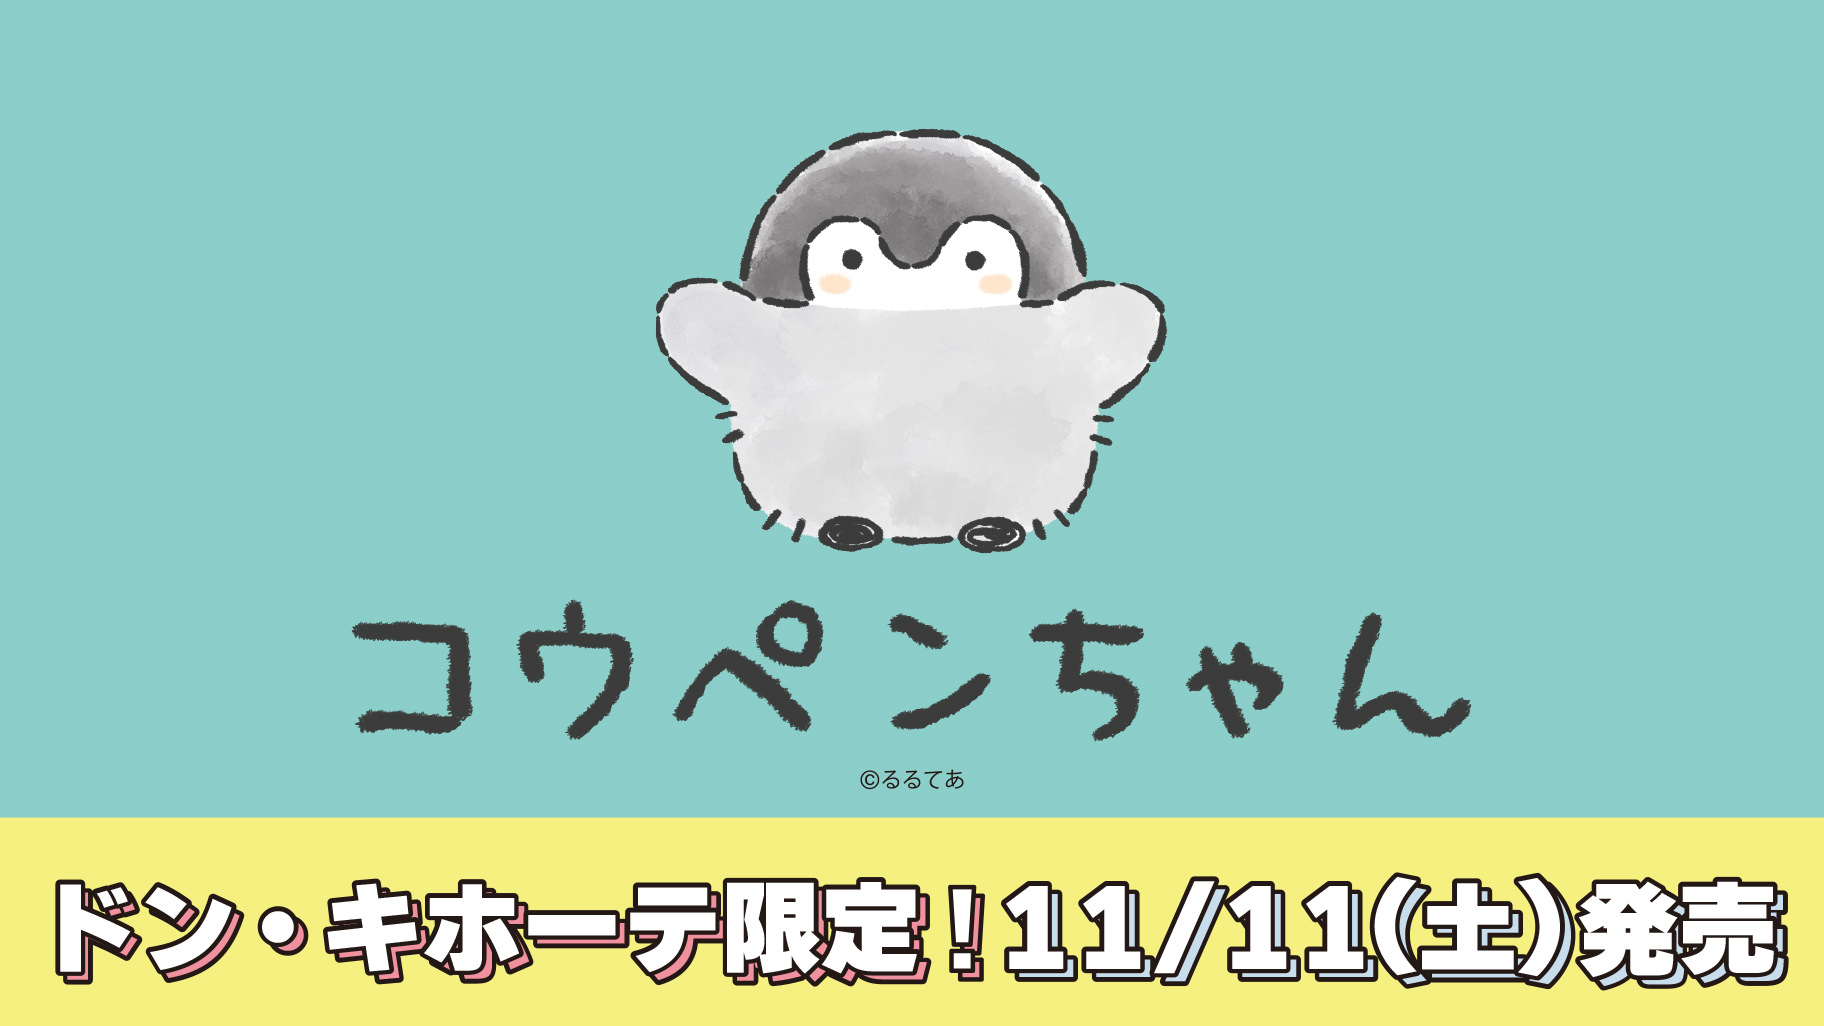 コウペンちゃん × ドンキホーテ 11月11日よりコラボアパレル発売!